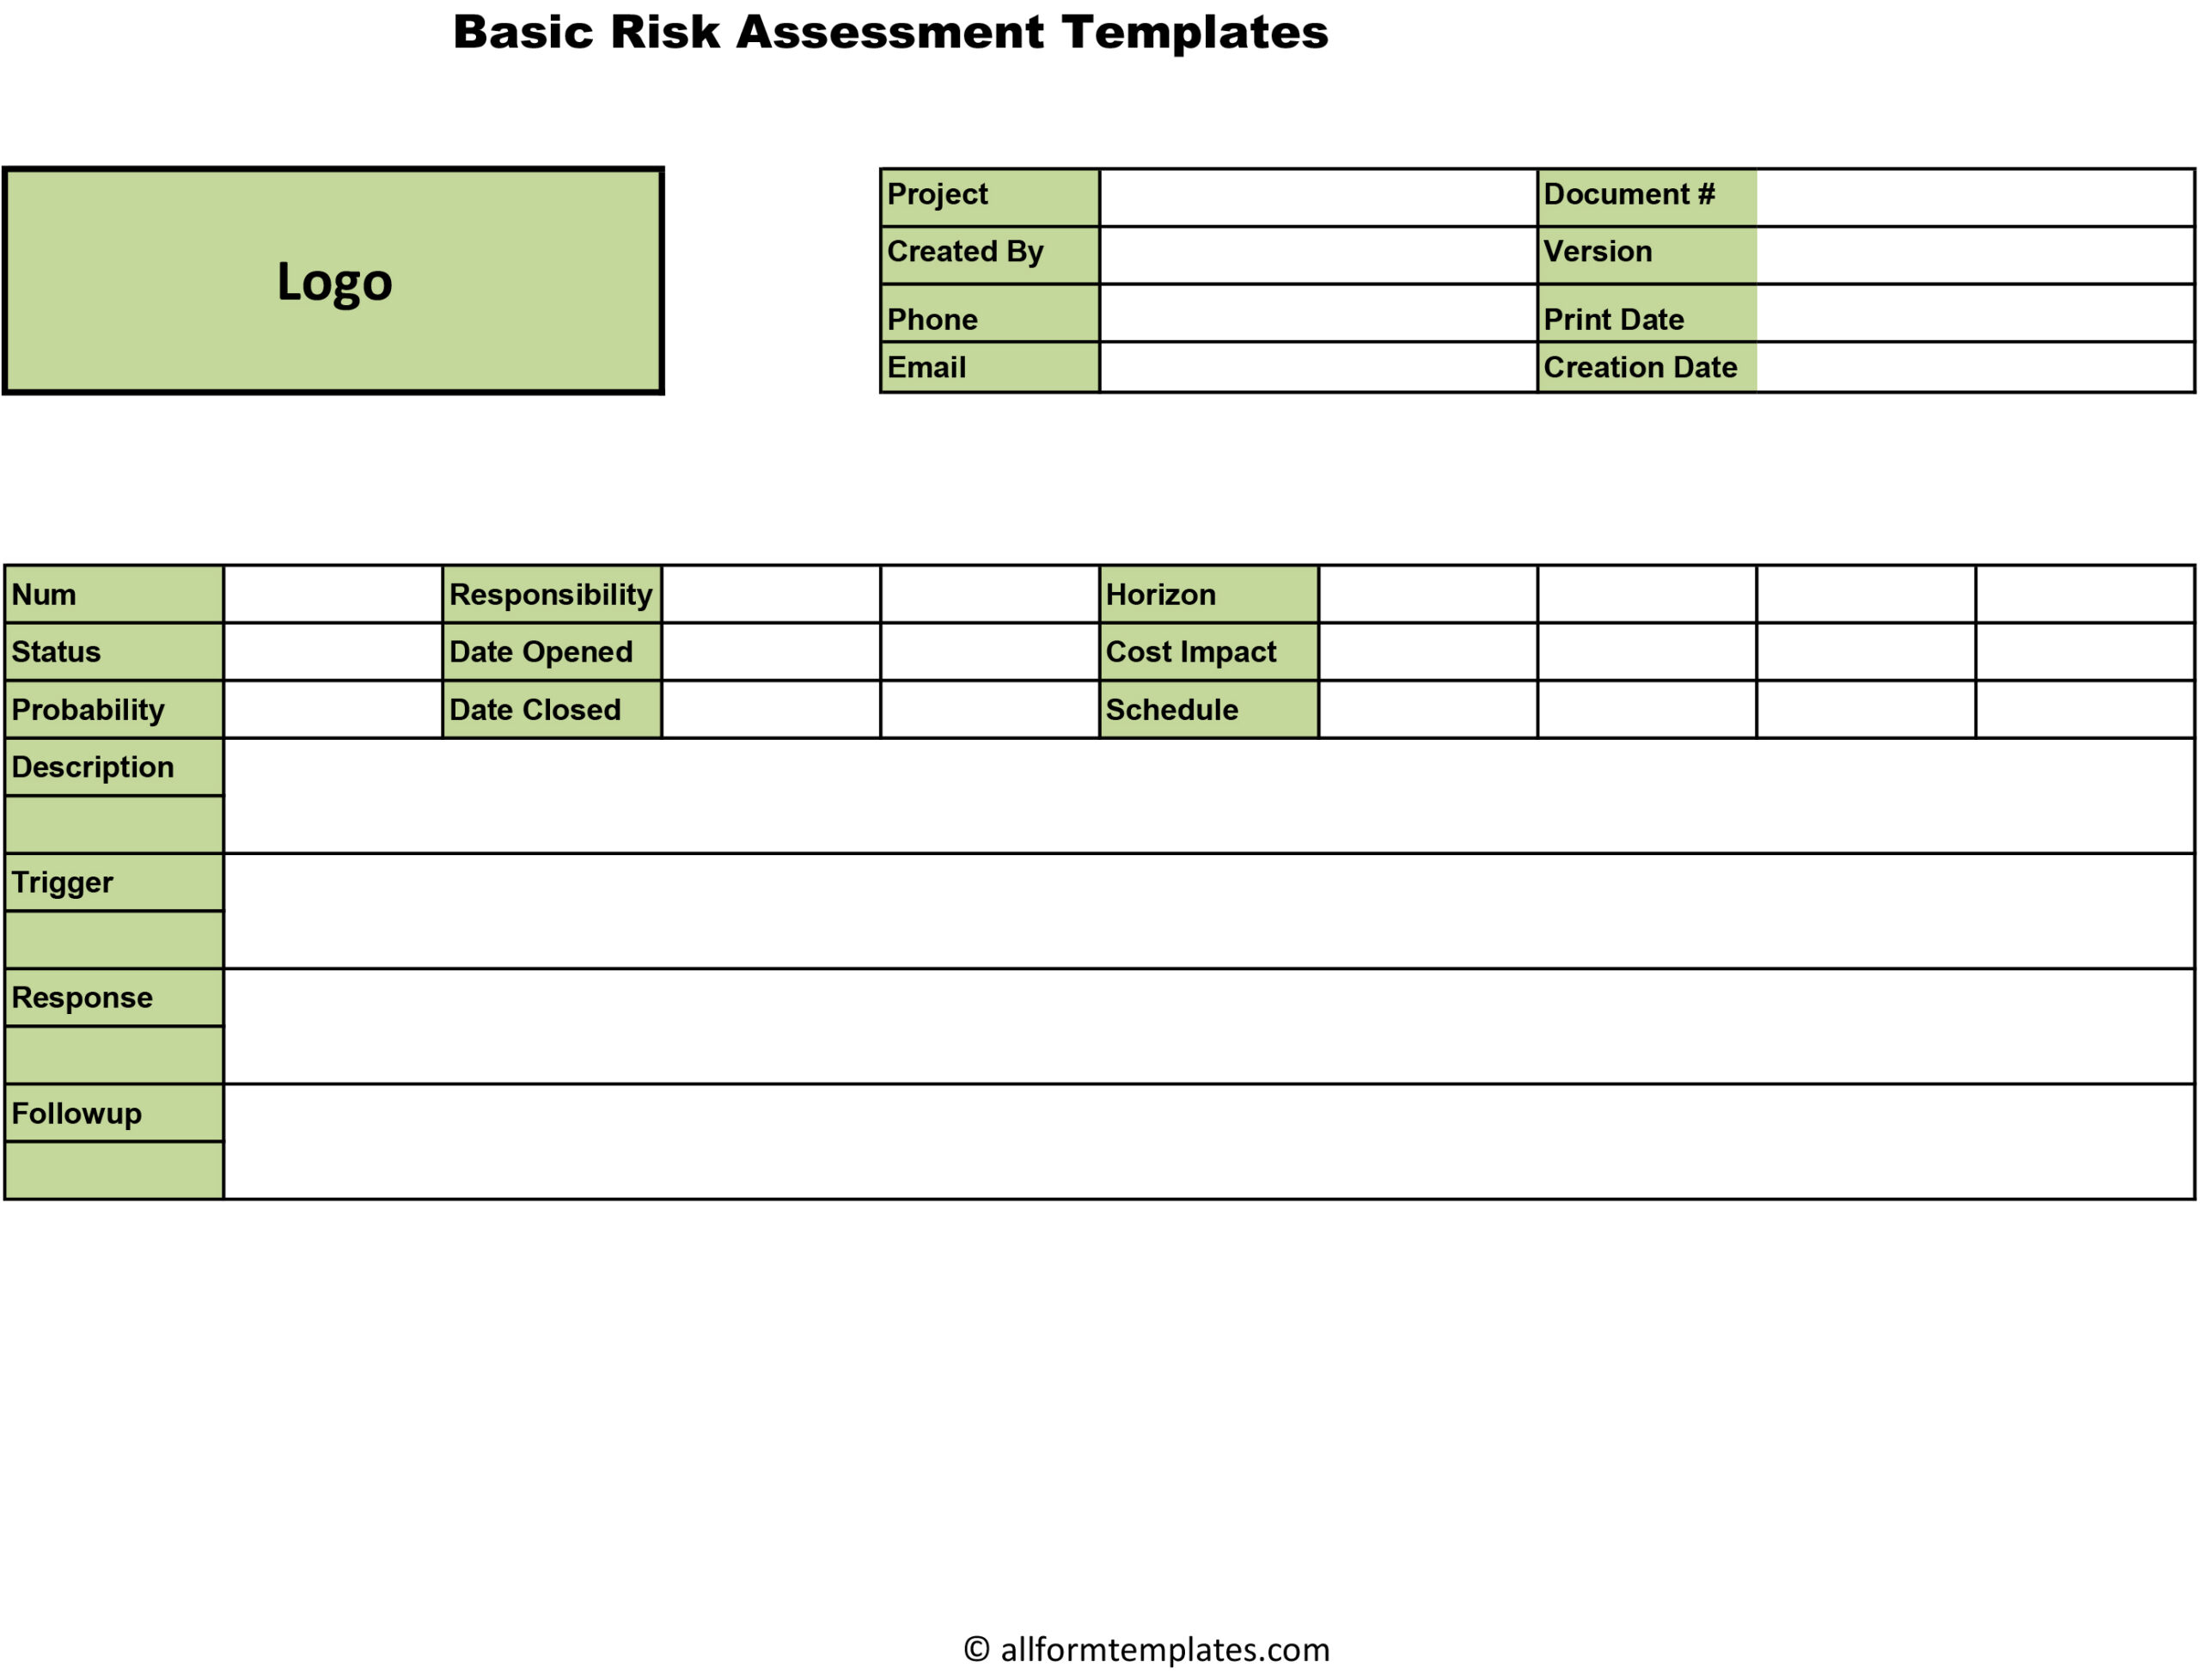 Basic-Risk-Assessment-HD